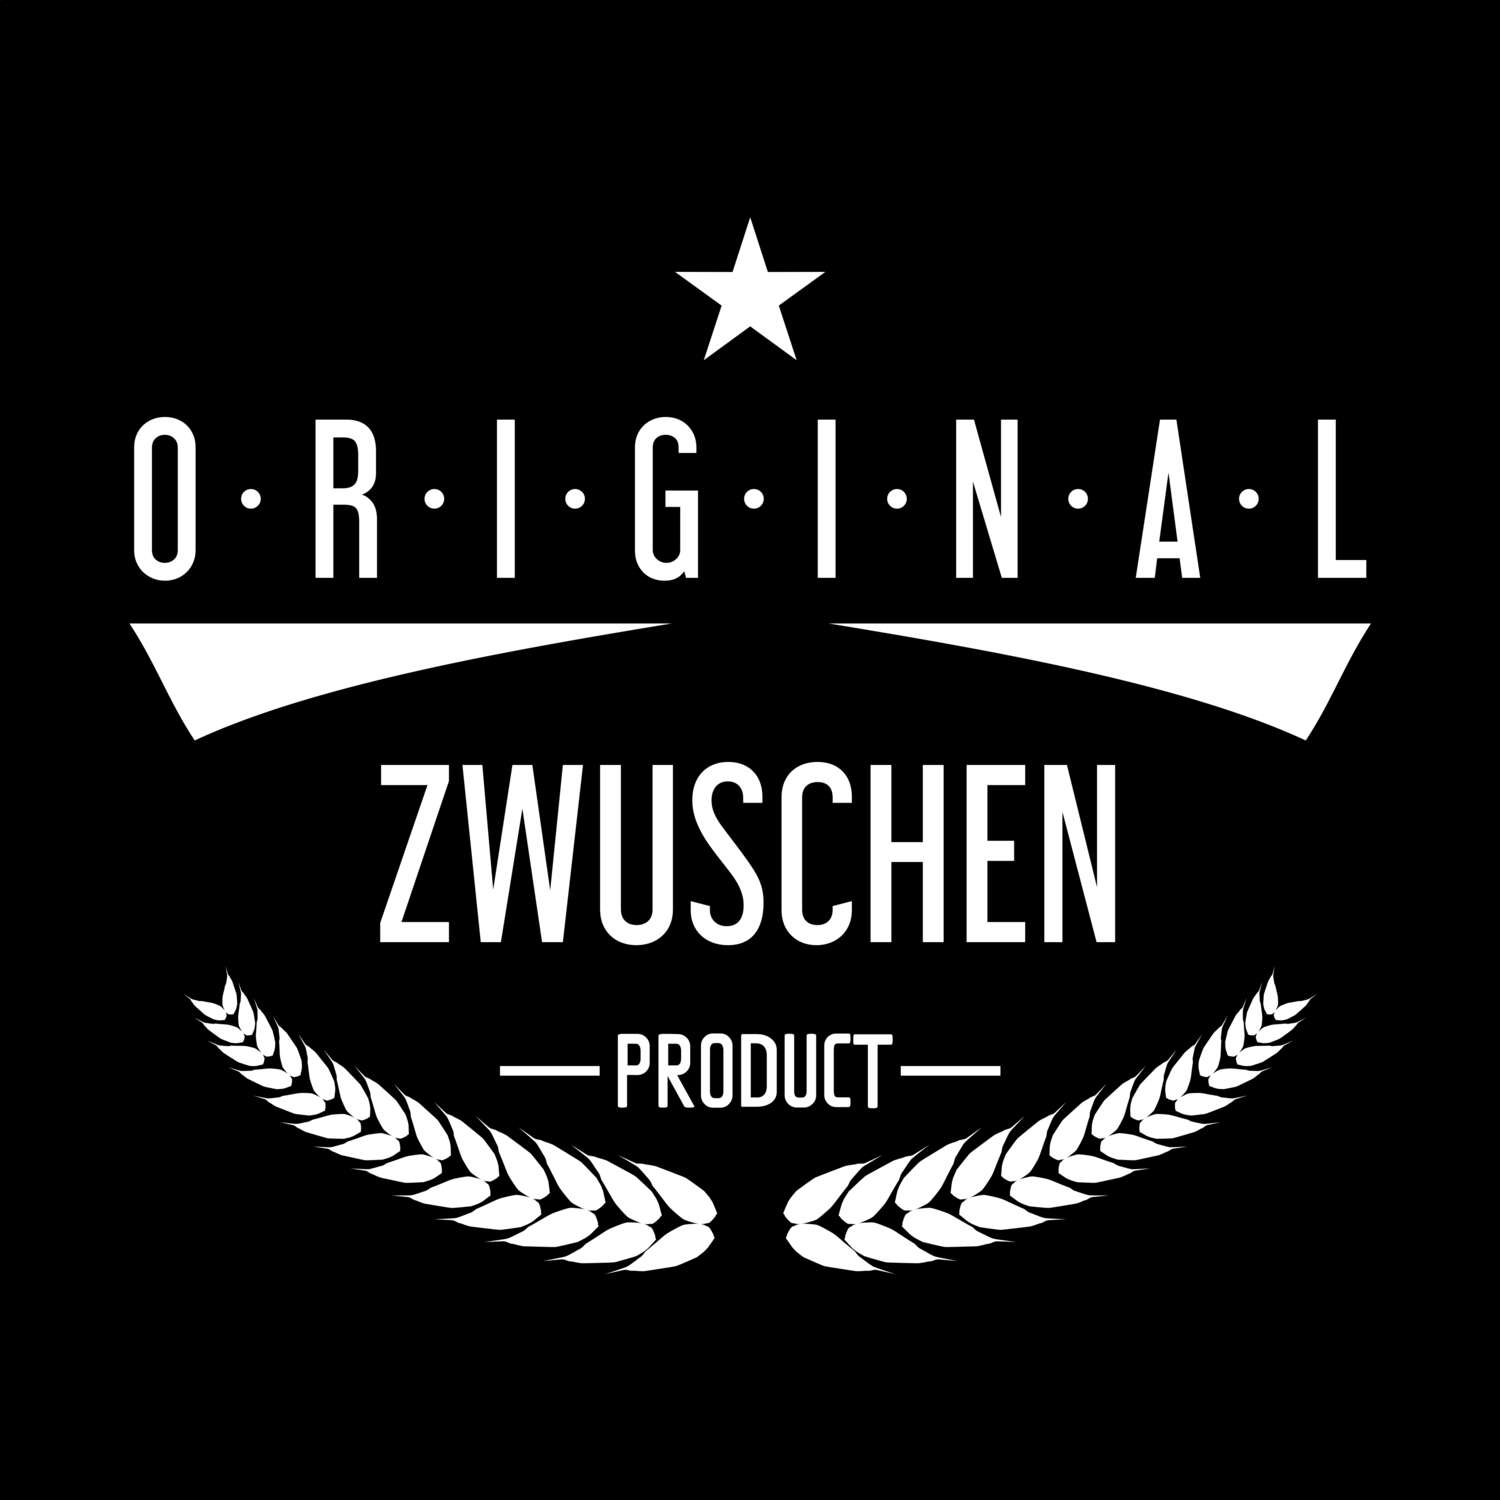 Zwuschen T-Shirt »Original Product«